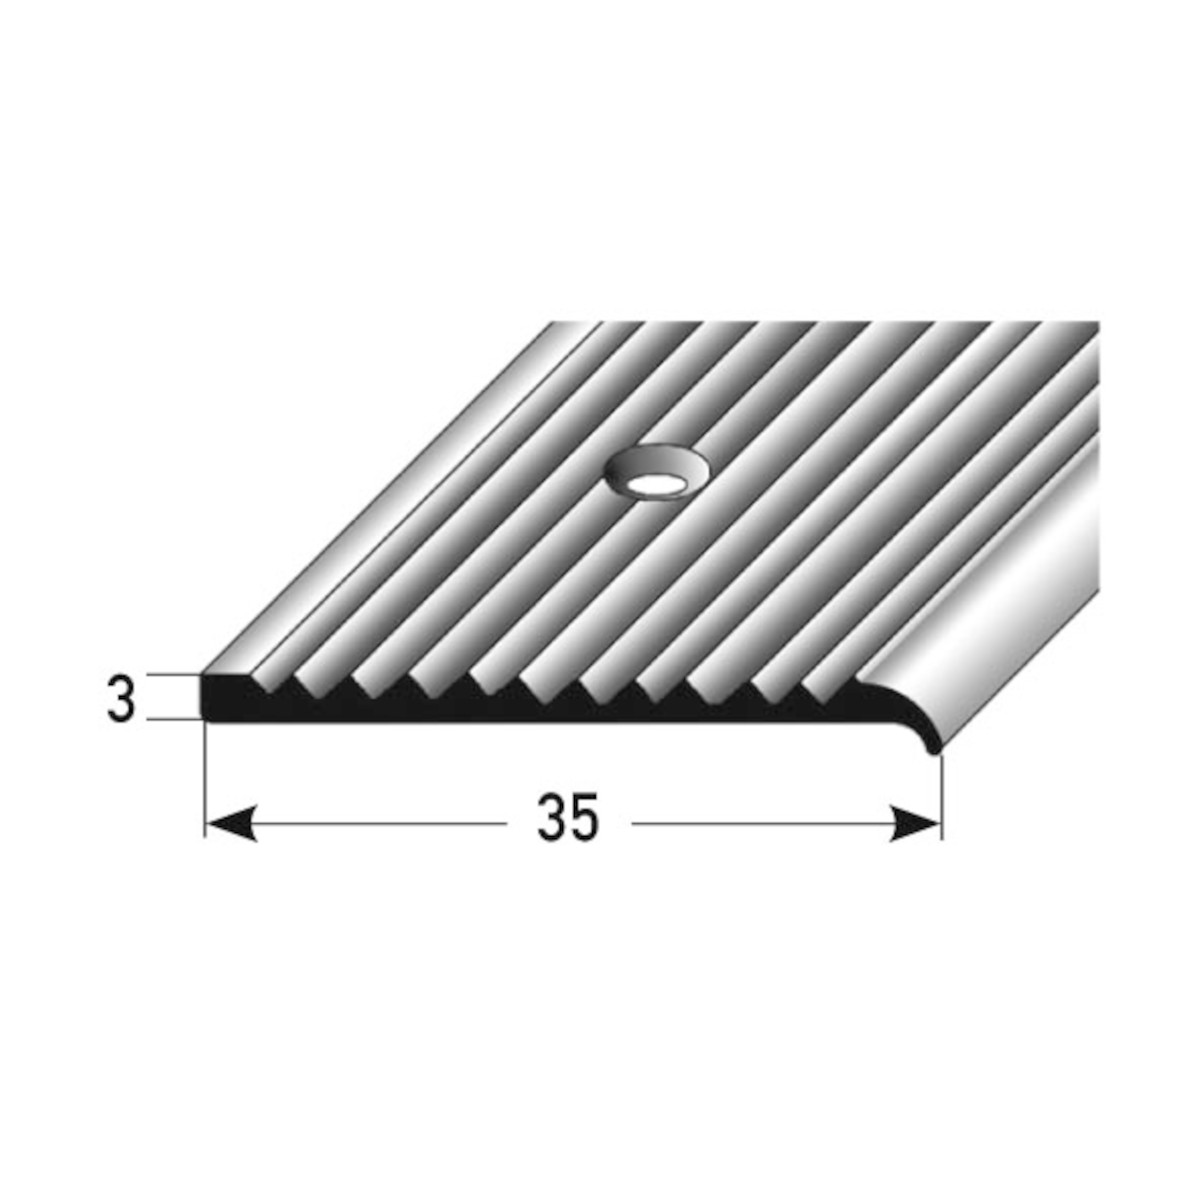 AUER Alu Treppenkantenprofil (Vorstoßprofil) Typ 128, 3 x 35 mm, 100 cm, silber